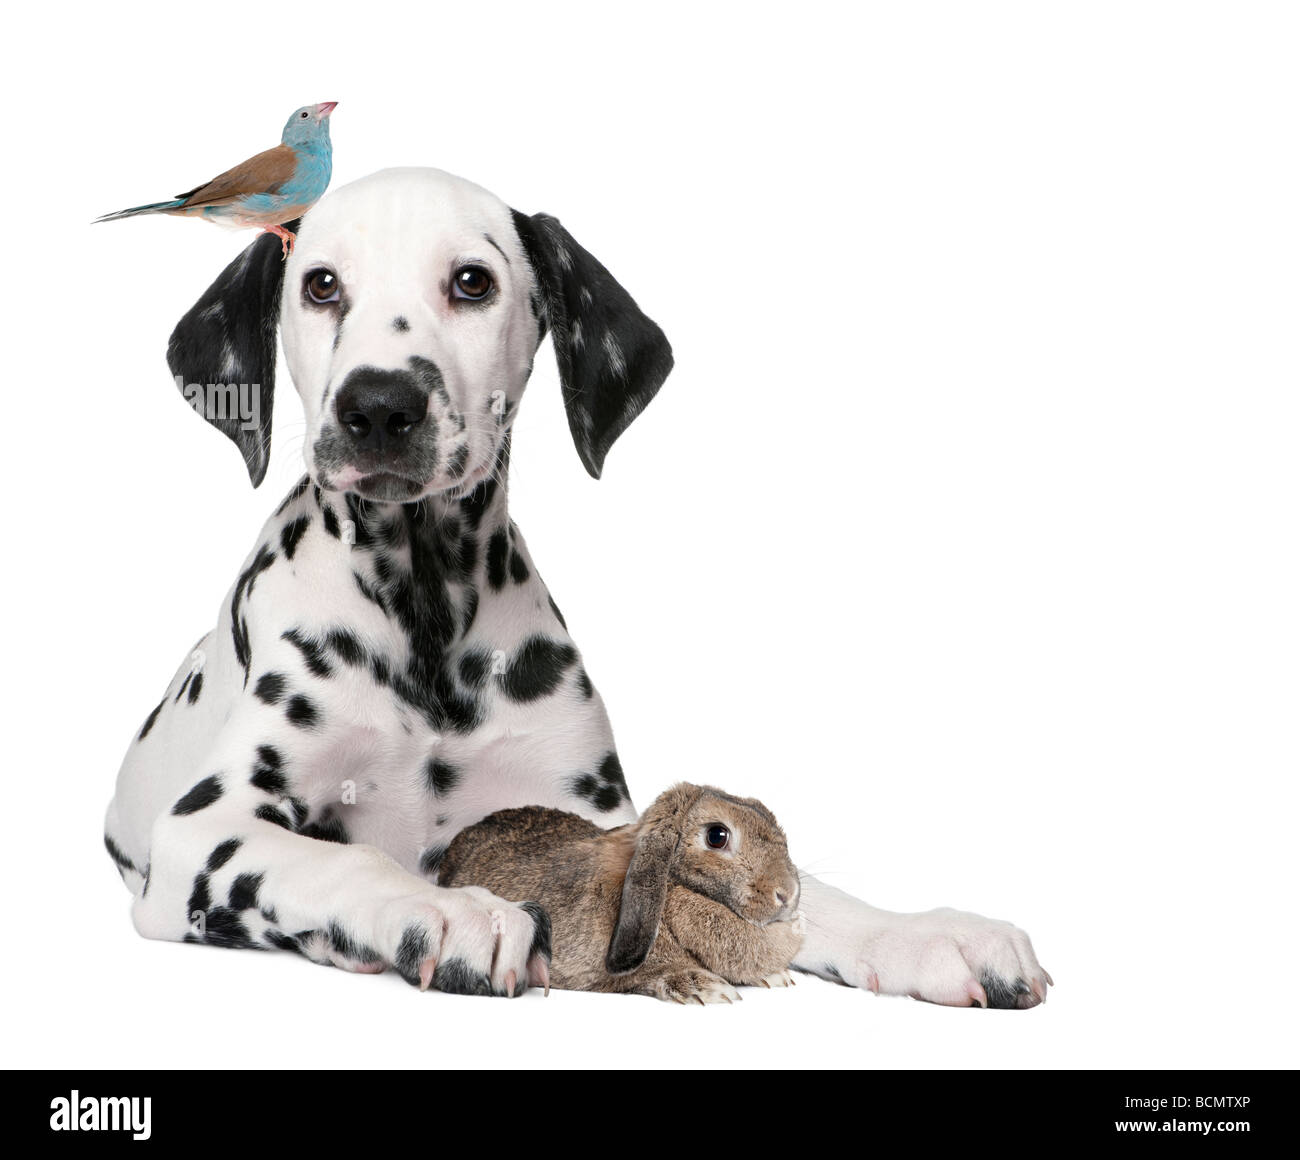 Grupo de animales domésticos, de cachorro, aves, conejo, delante de un fondo blanco, Foto de estudio Foto de stock